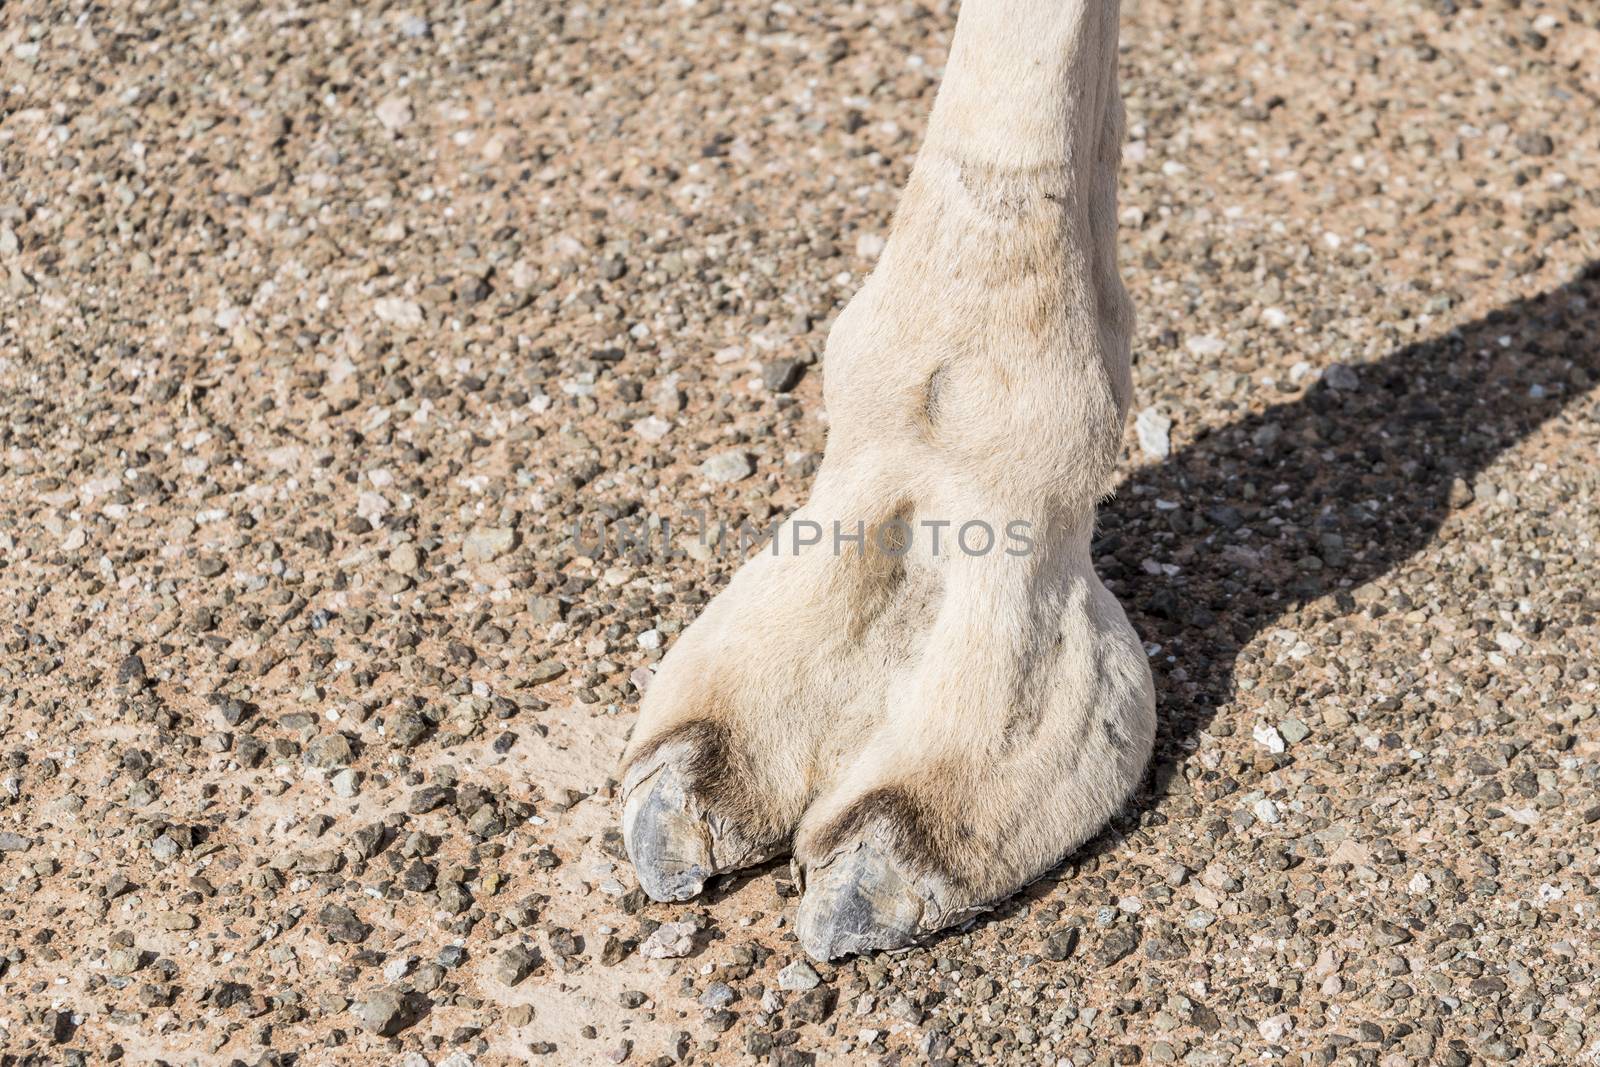 Camel feet in Sharjah Emirates, UAE by GABIS